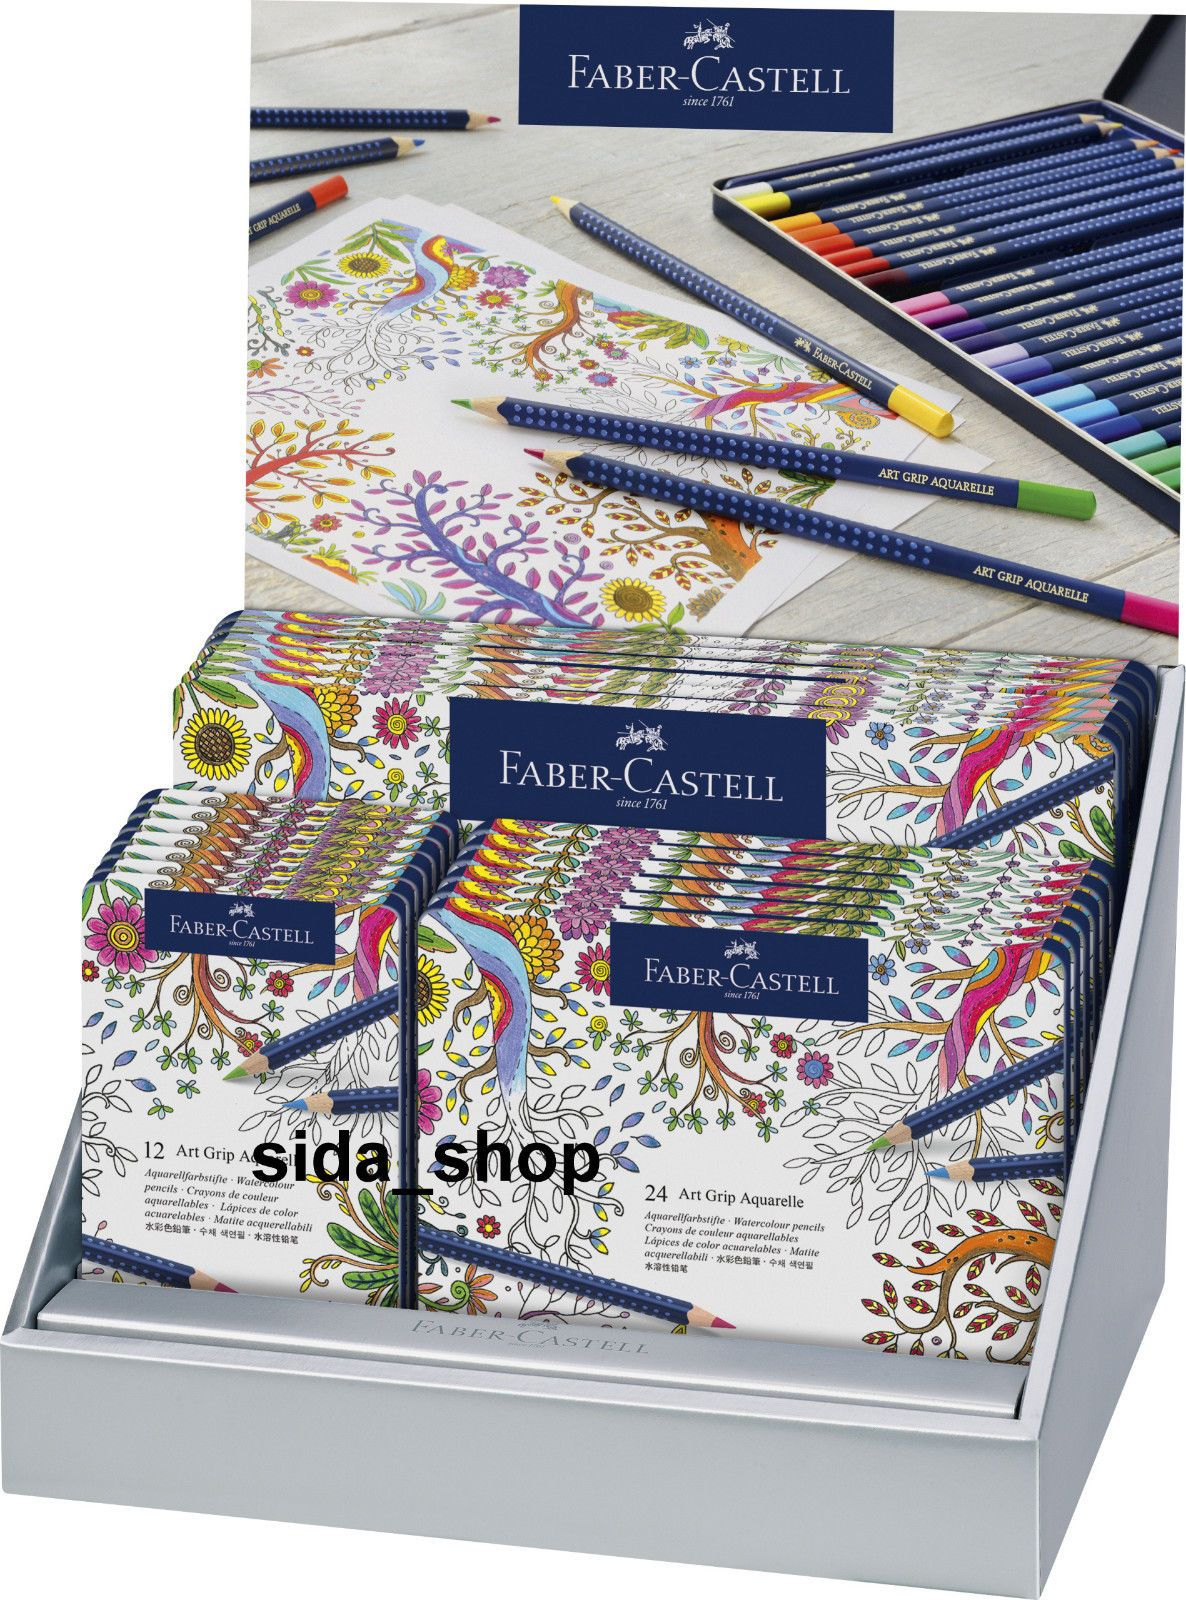 Faber-Castell Aquarellstifte Art Grip Aquarelle 12, 24, 36 innen Faber Castell Art Grip Aquarelle 36